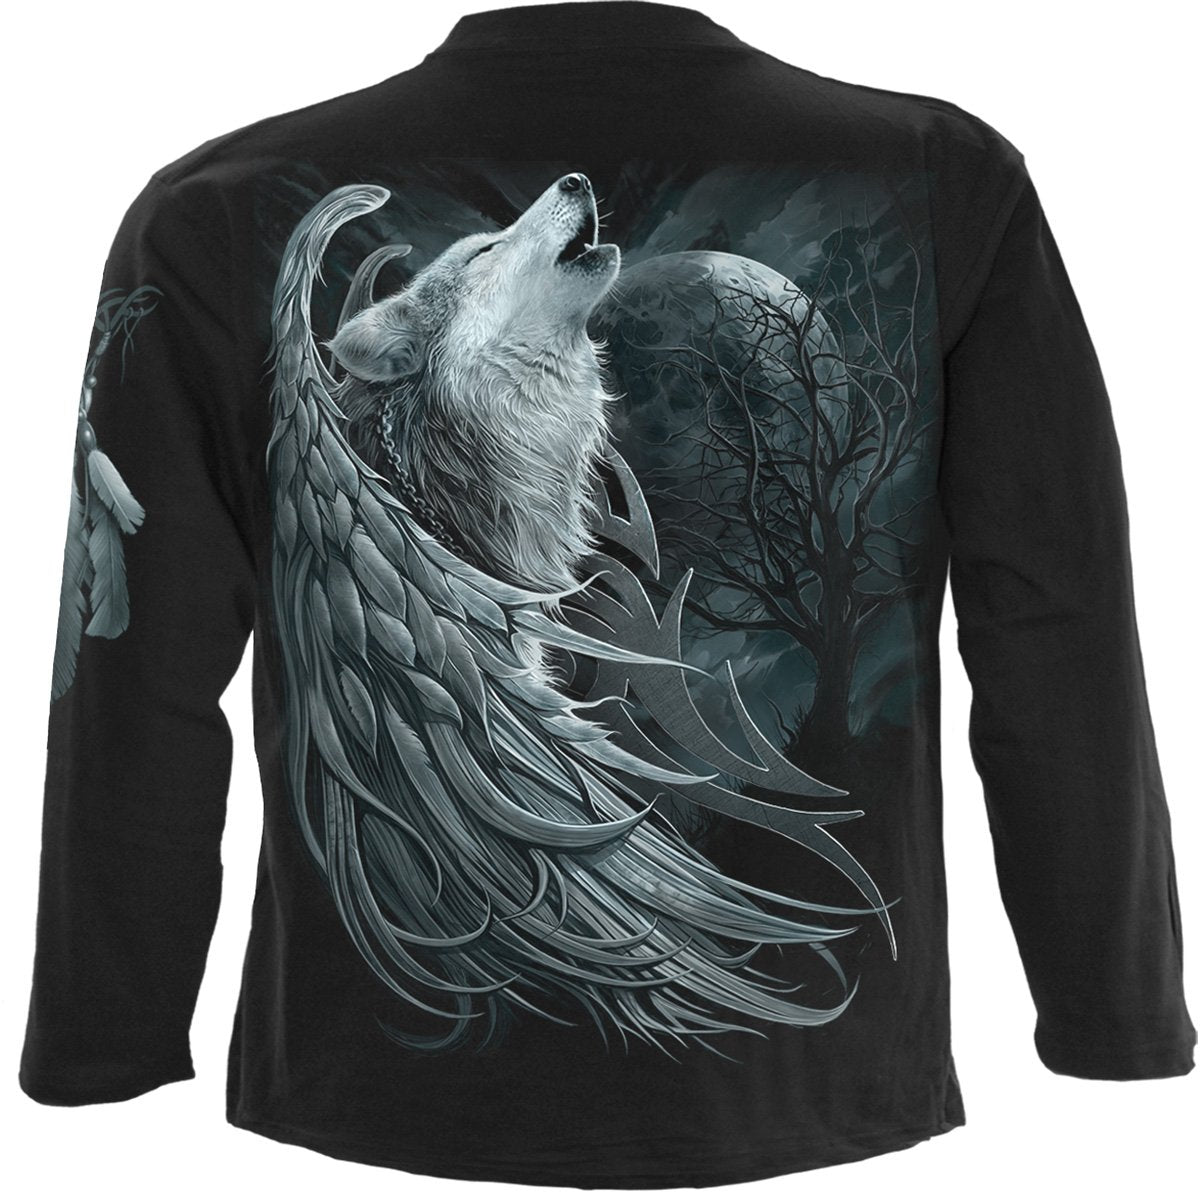 WOLF SPIRIT - Longsleeve T-Shirt Black - Spiral USA